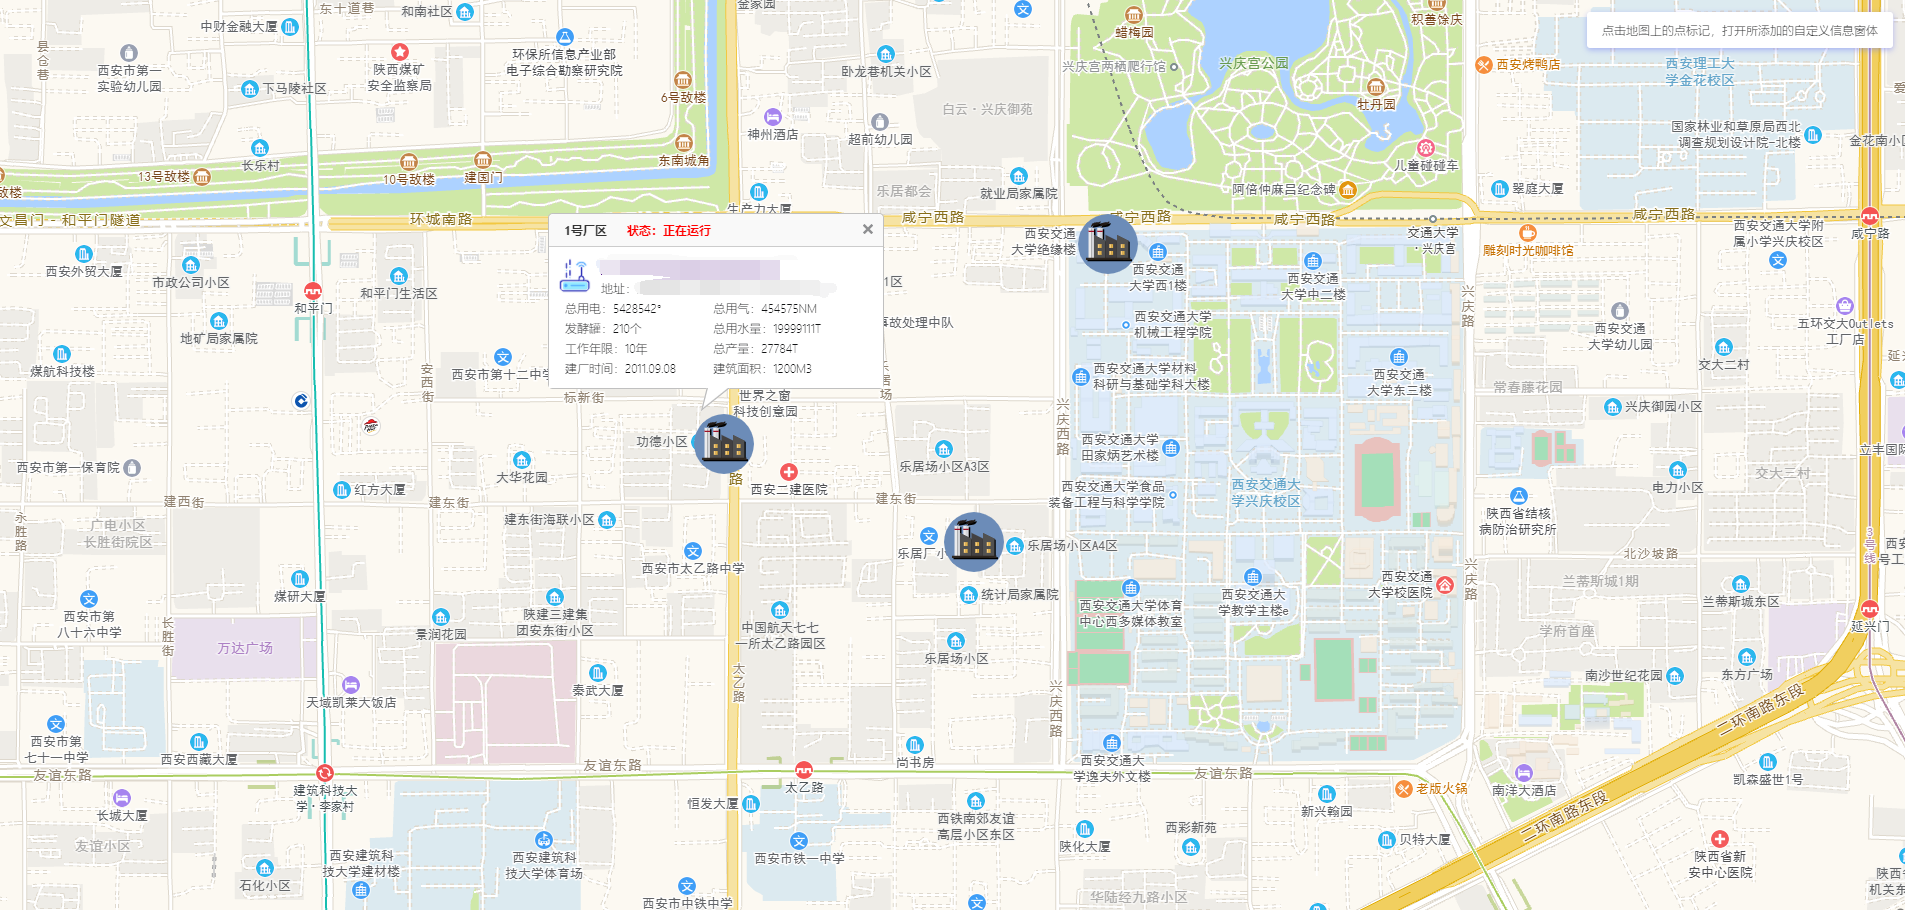 北京弹窗区域地图图片